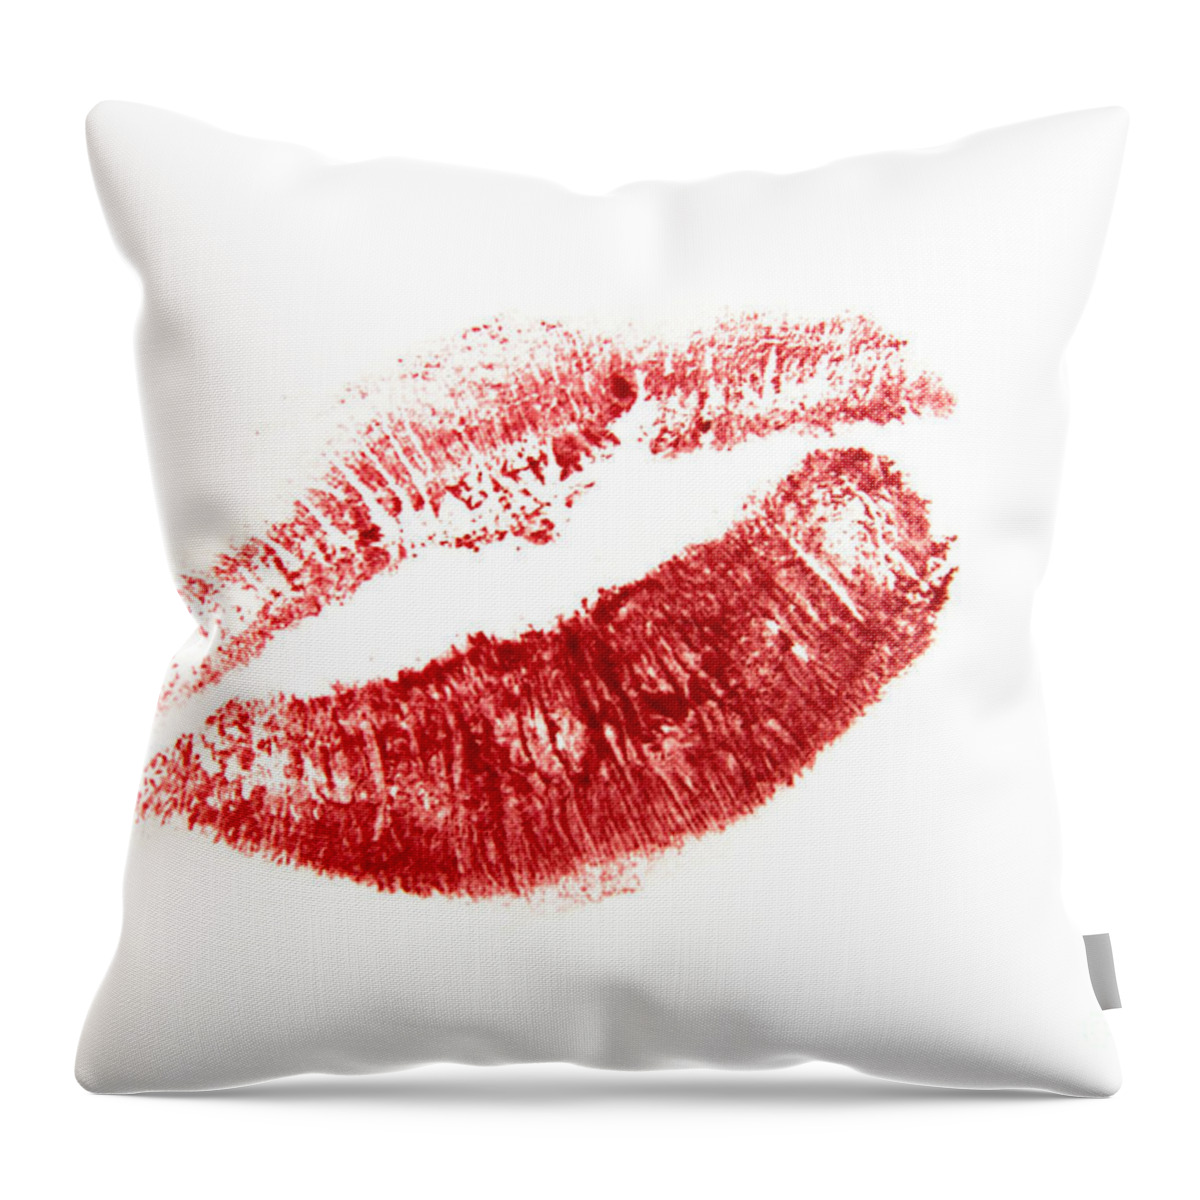 Love Throw Pillow featuring the photograph Red lips by Bernard Jaubert